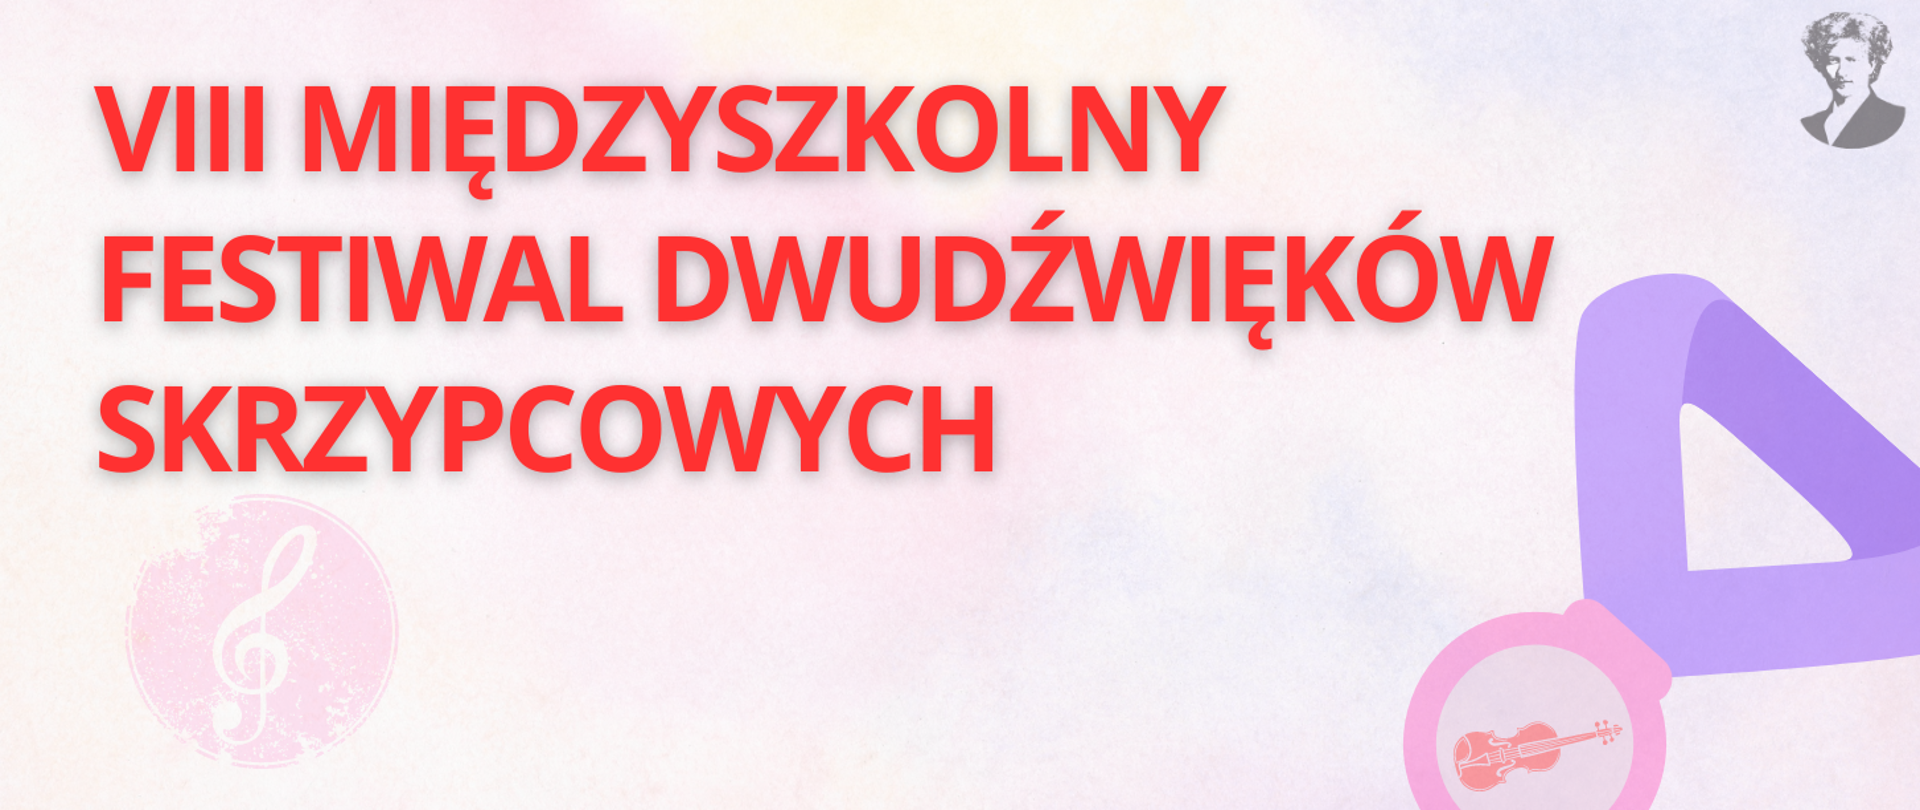 Baner infograficzny w kolorze jasnofioletowym z czerwonym napisem: "VIII MIĘDZYSZKOLNY FESTIWAL DWUDŹWIĘKÓW SKRZYPCOWYCH", w prawej części logo ZSM oraz grafika z medalem i nadrukowanym kształtem skrzypiec.